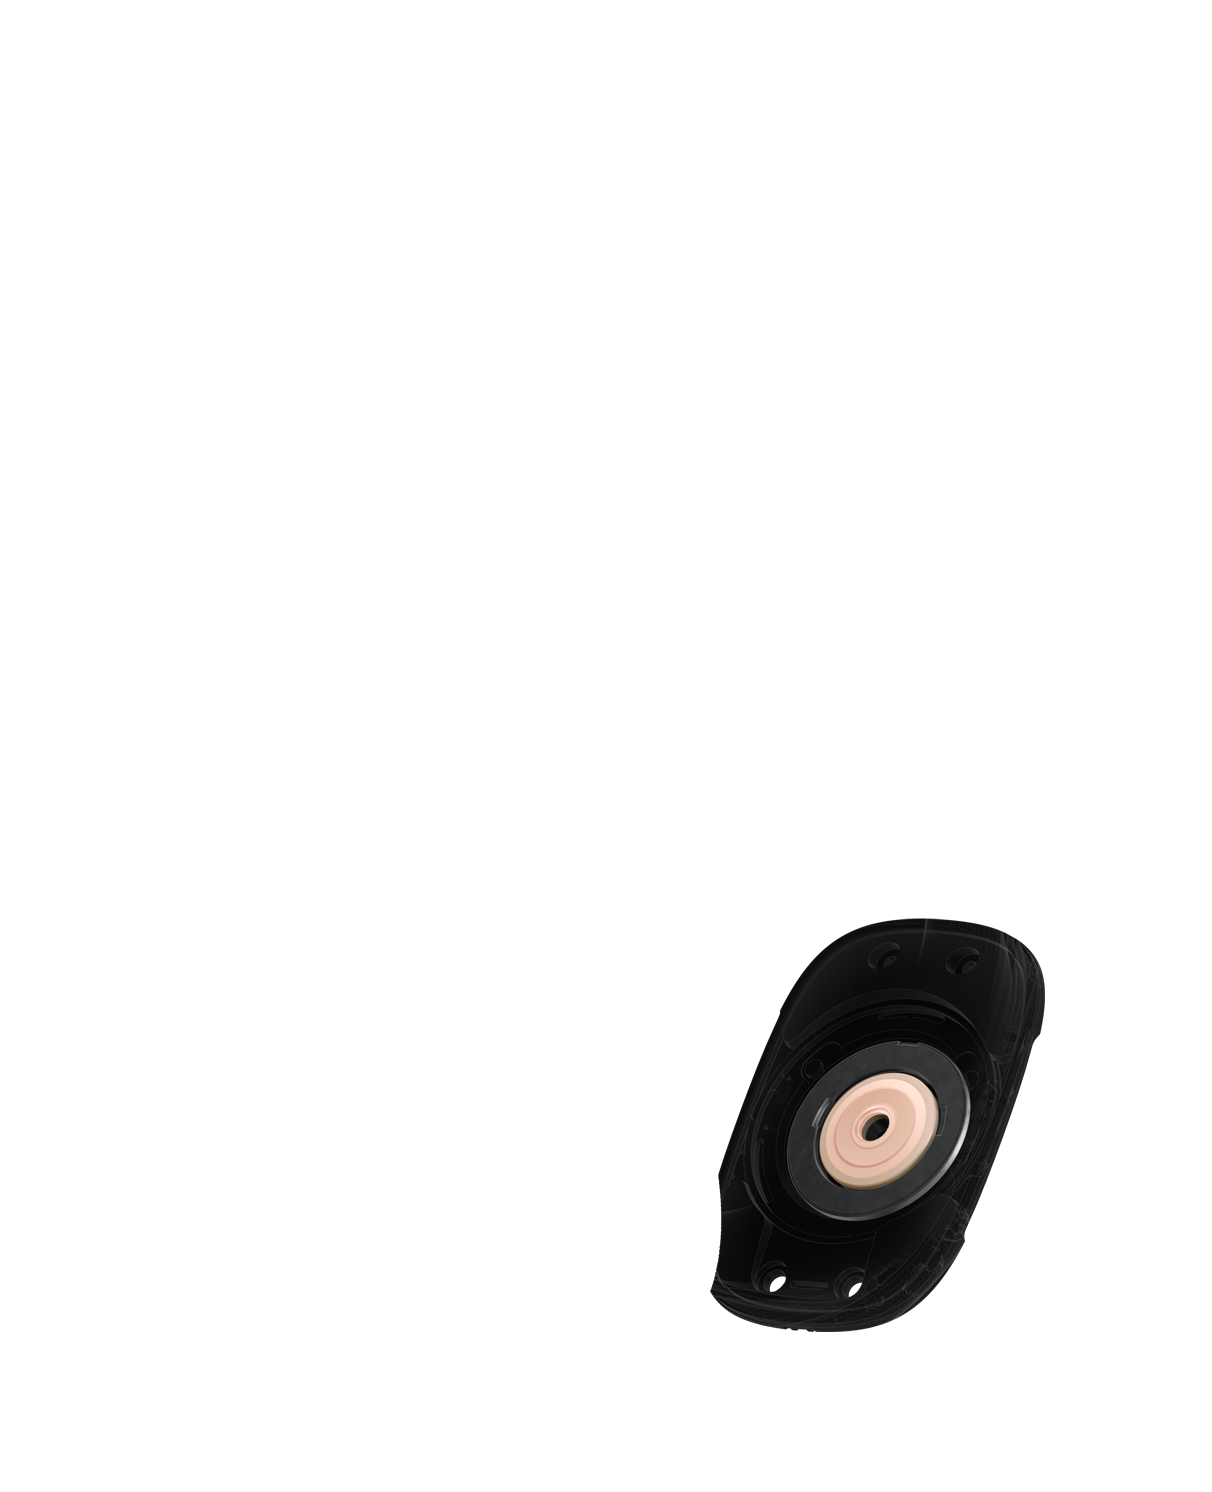 Garsiakalbio vidaus vaizdas, kuriame akcentuojamas žiedo formos magnetas, sumažinantis garso iškraipymą.